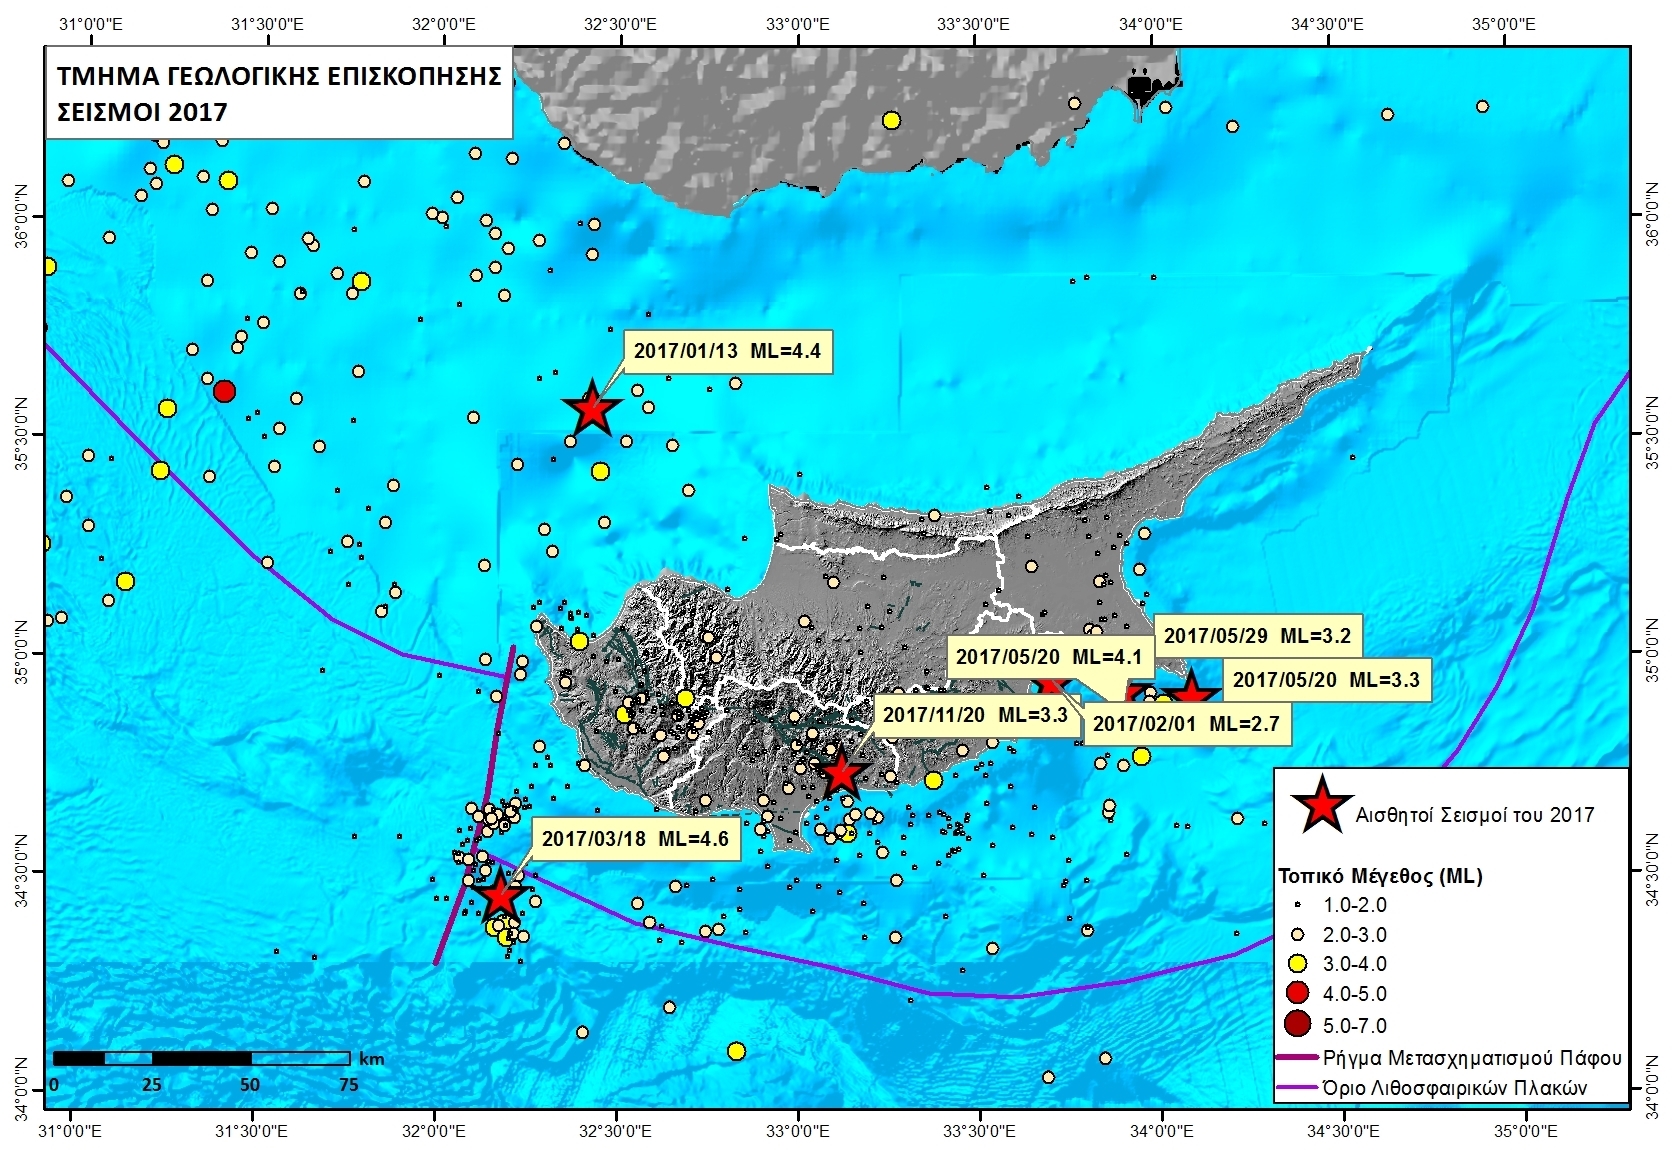 Χωρική κατανομή, ως προς το μέγεθος, των τοπικών σεισμών της Κύπρου που έχουν καταγραφεί από το Σεισμολογικό Κέντρο του Τμήματος Γεωλογικής Επισκόπησης κατά το έτος 2017